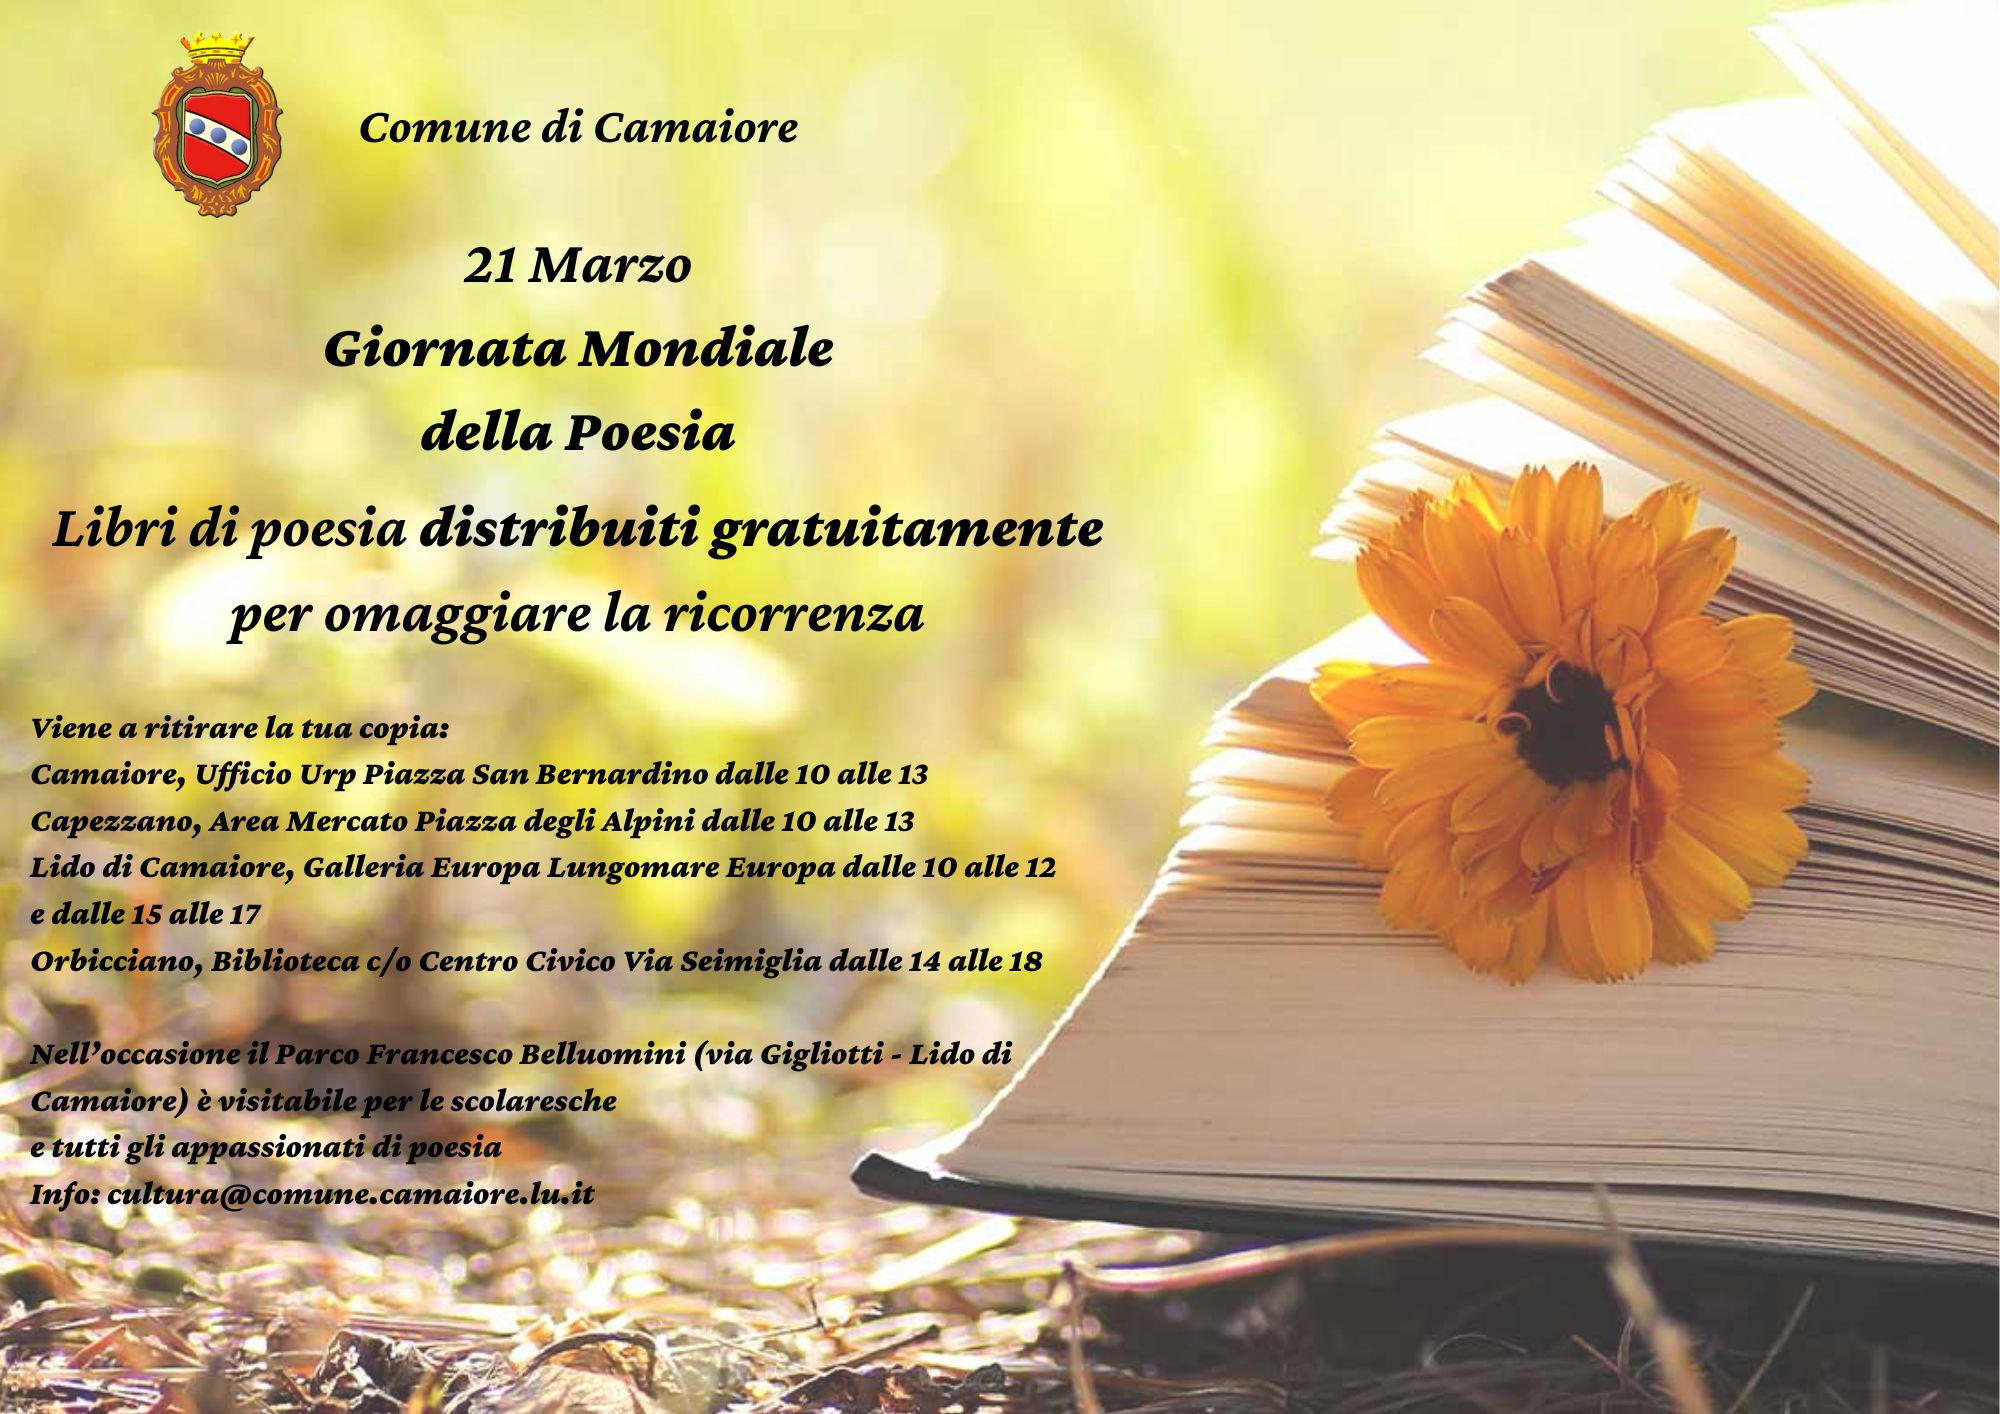 21 marzo, Camaiore celebra la Giornata Mondiale della Poesia con una distribuzione gratuita di libri in versi